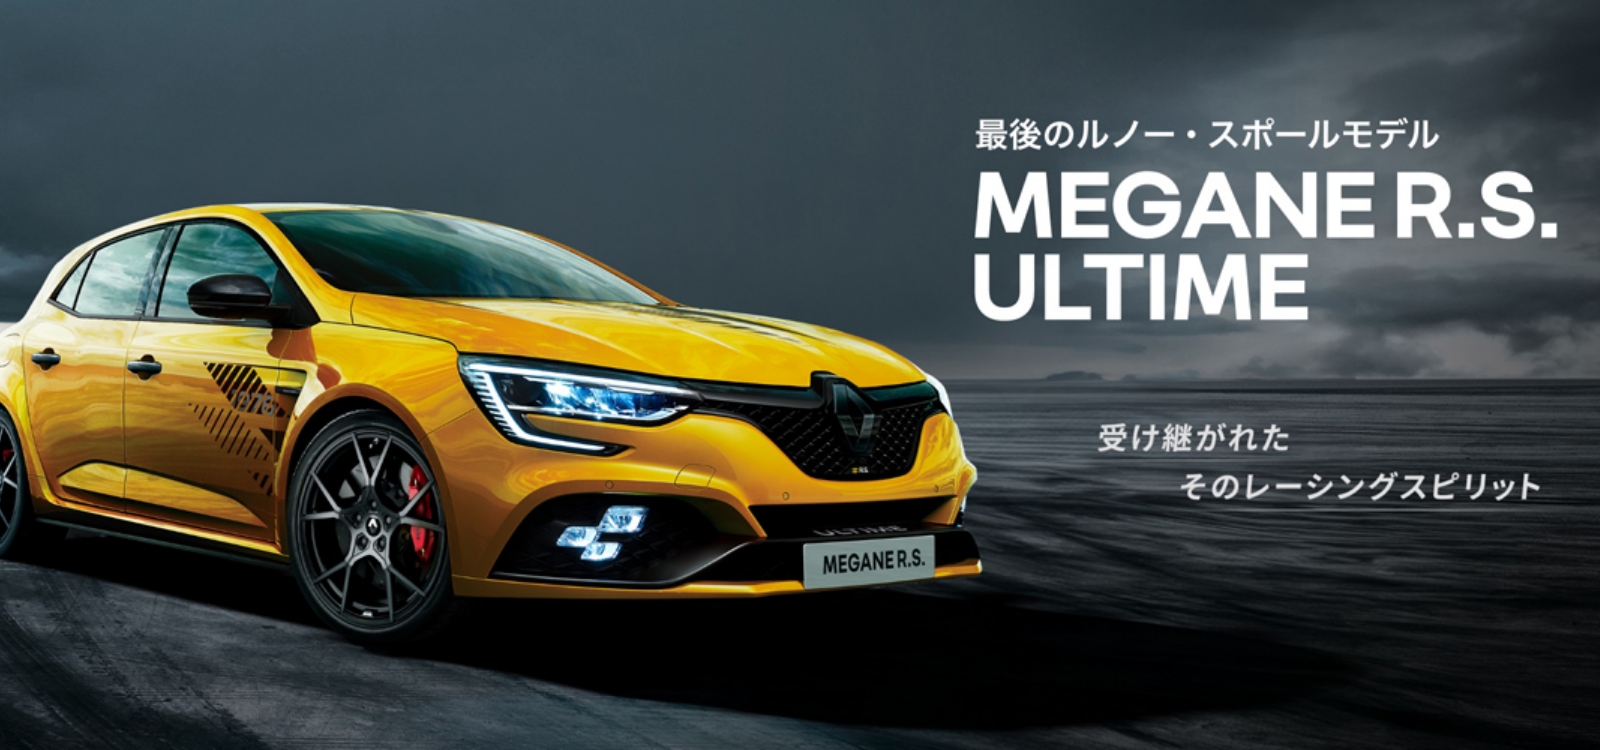 Renault Japon | ルノー メガーヌ R.S. ウルティム